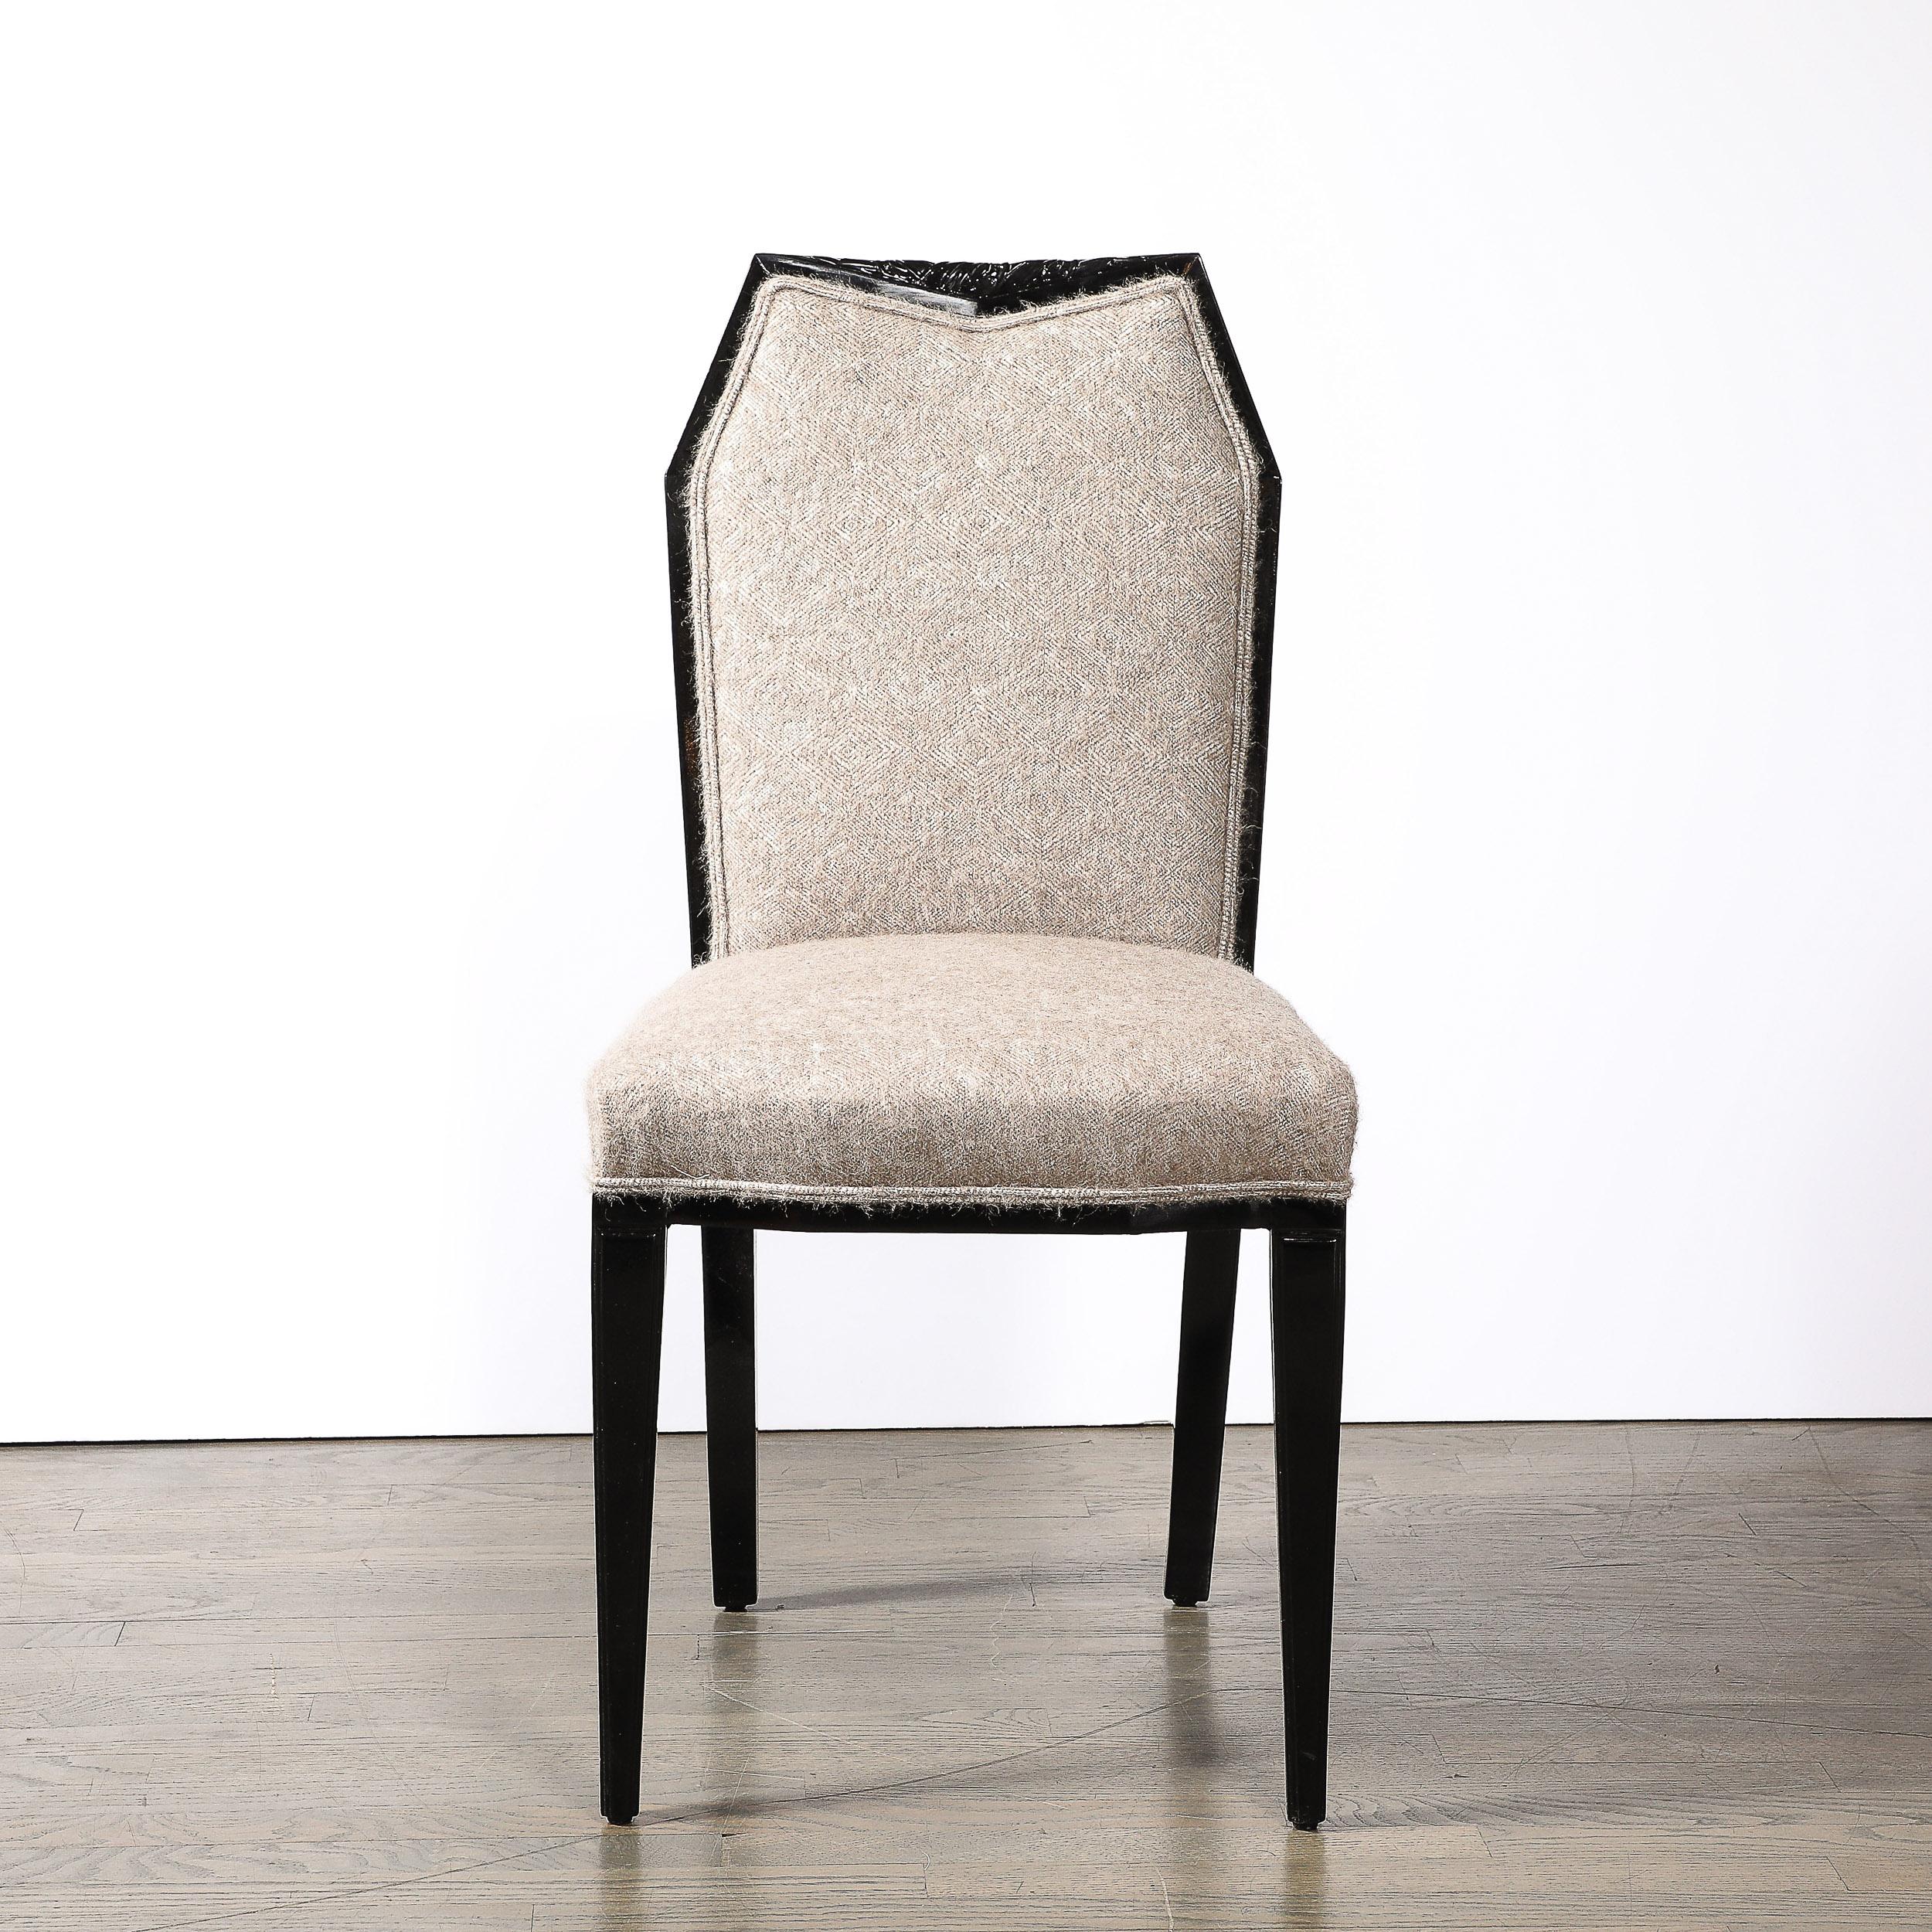 Cette chaise d'appoint Art déco cubiste de style gratte-ciel, laquée noire et tapissée à la manière de Ruhlmann, a été conçue et fabriquée en France vers 1930. Elle présente une composition géométrique magnifiquement proportionnée d'angles élégants